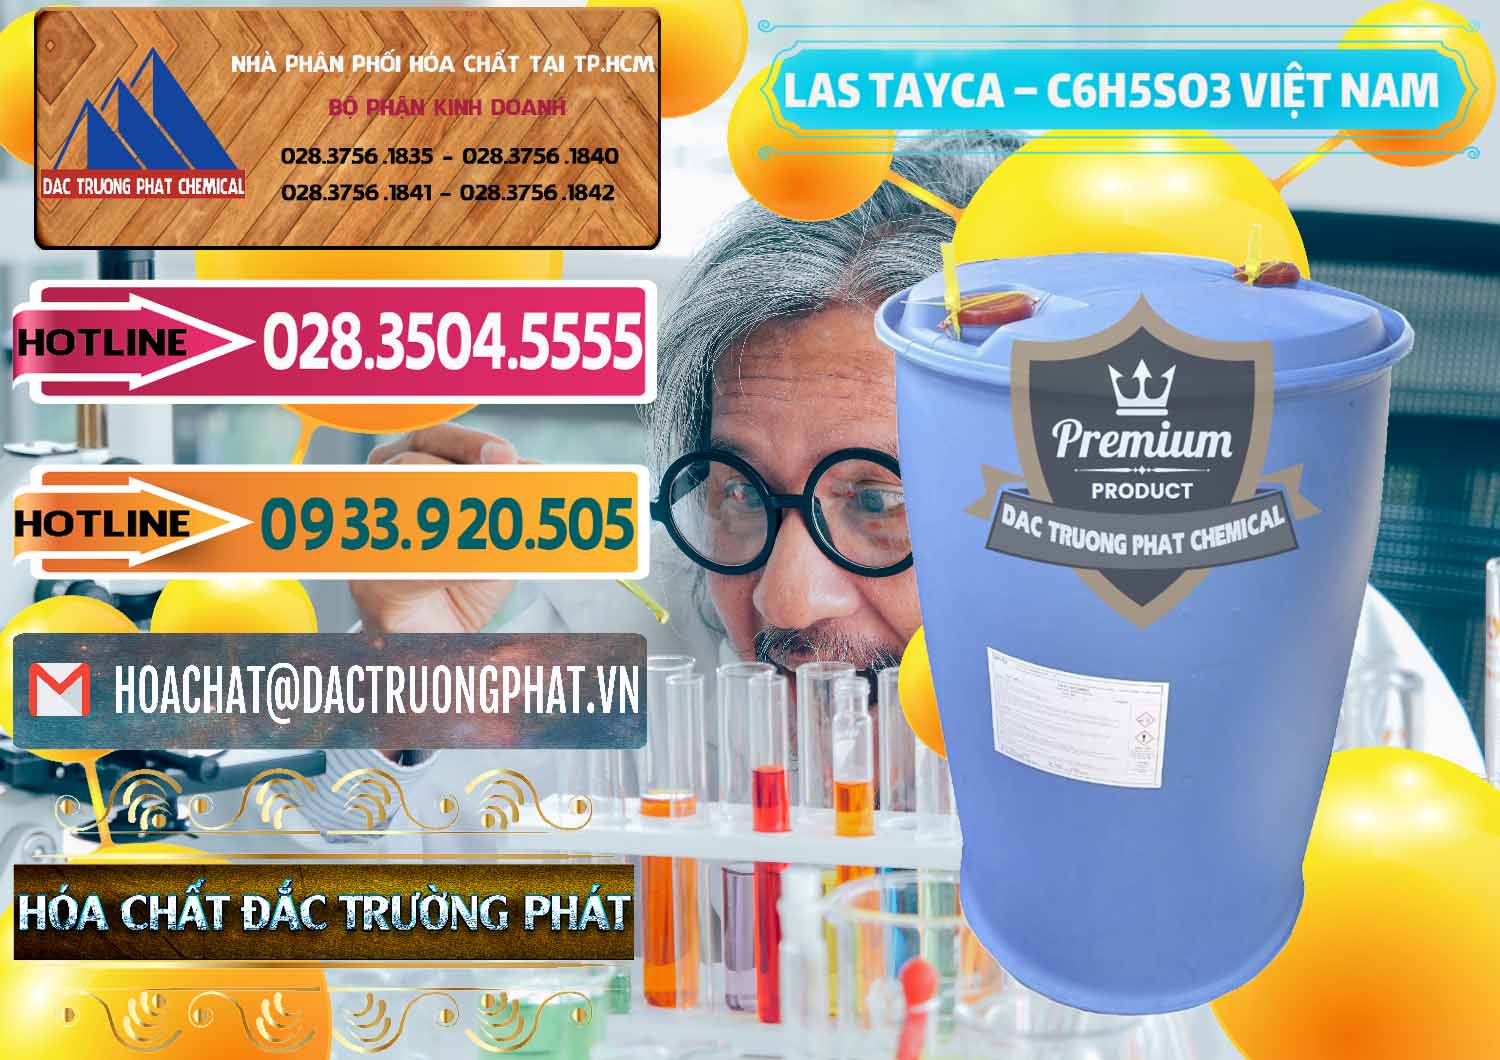 Cty chuyên cung cấp - kinh doanh Chất tạo bọt Las Tayca Việt Nam - 0305 - Cung cấp và kinh doanh hóa chất tại TP.HCM - dactruongphat.vn